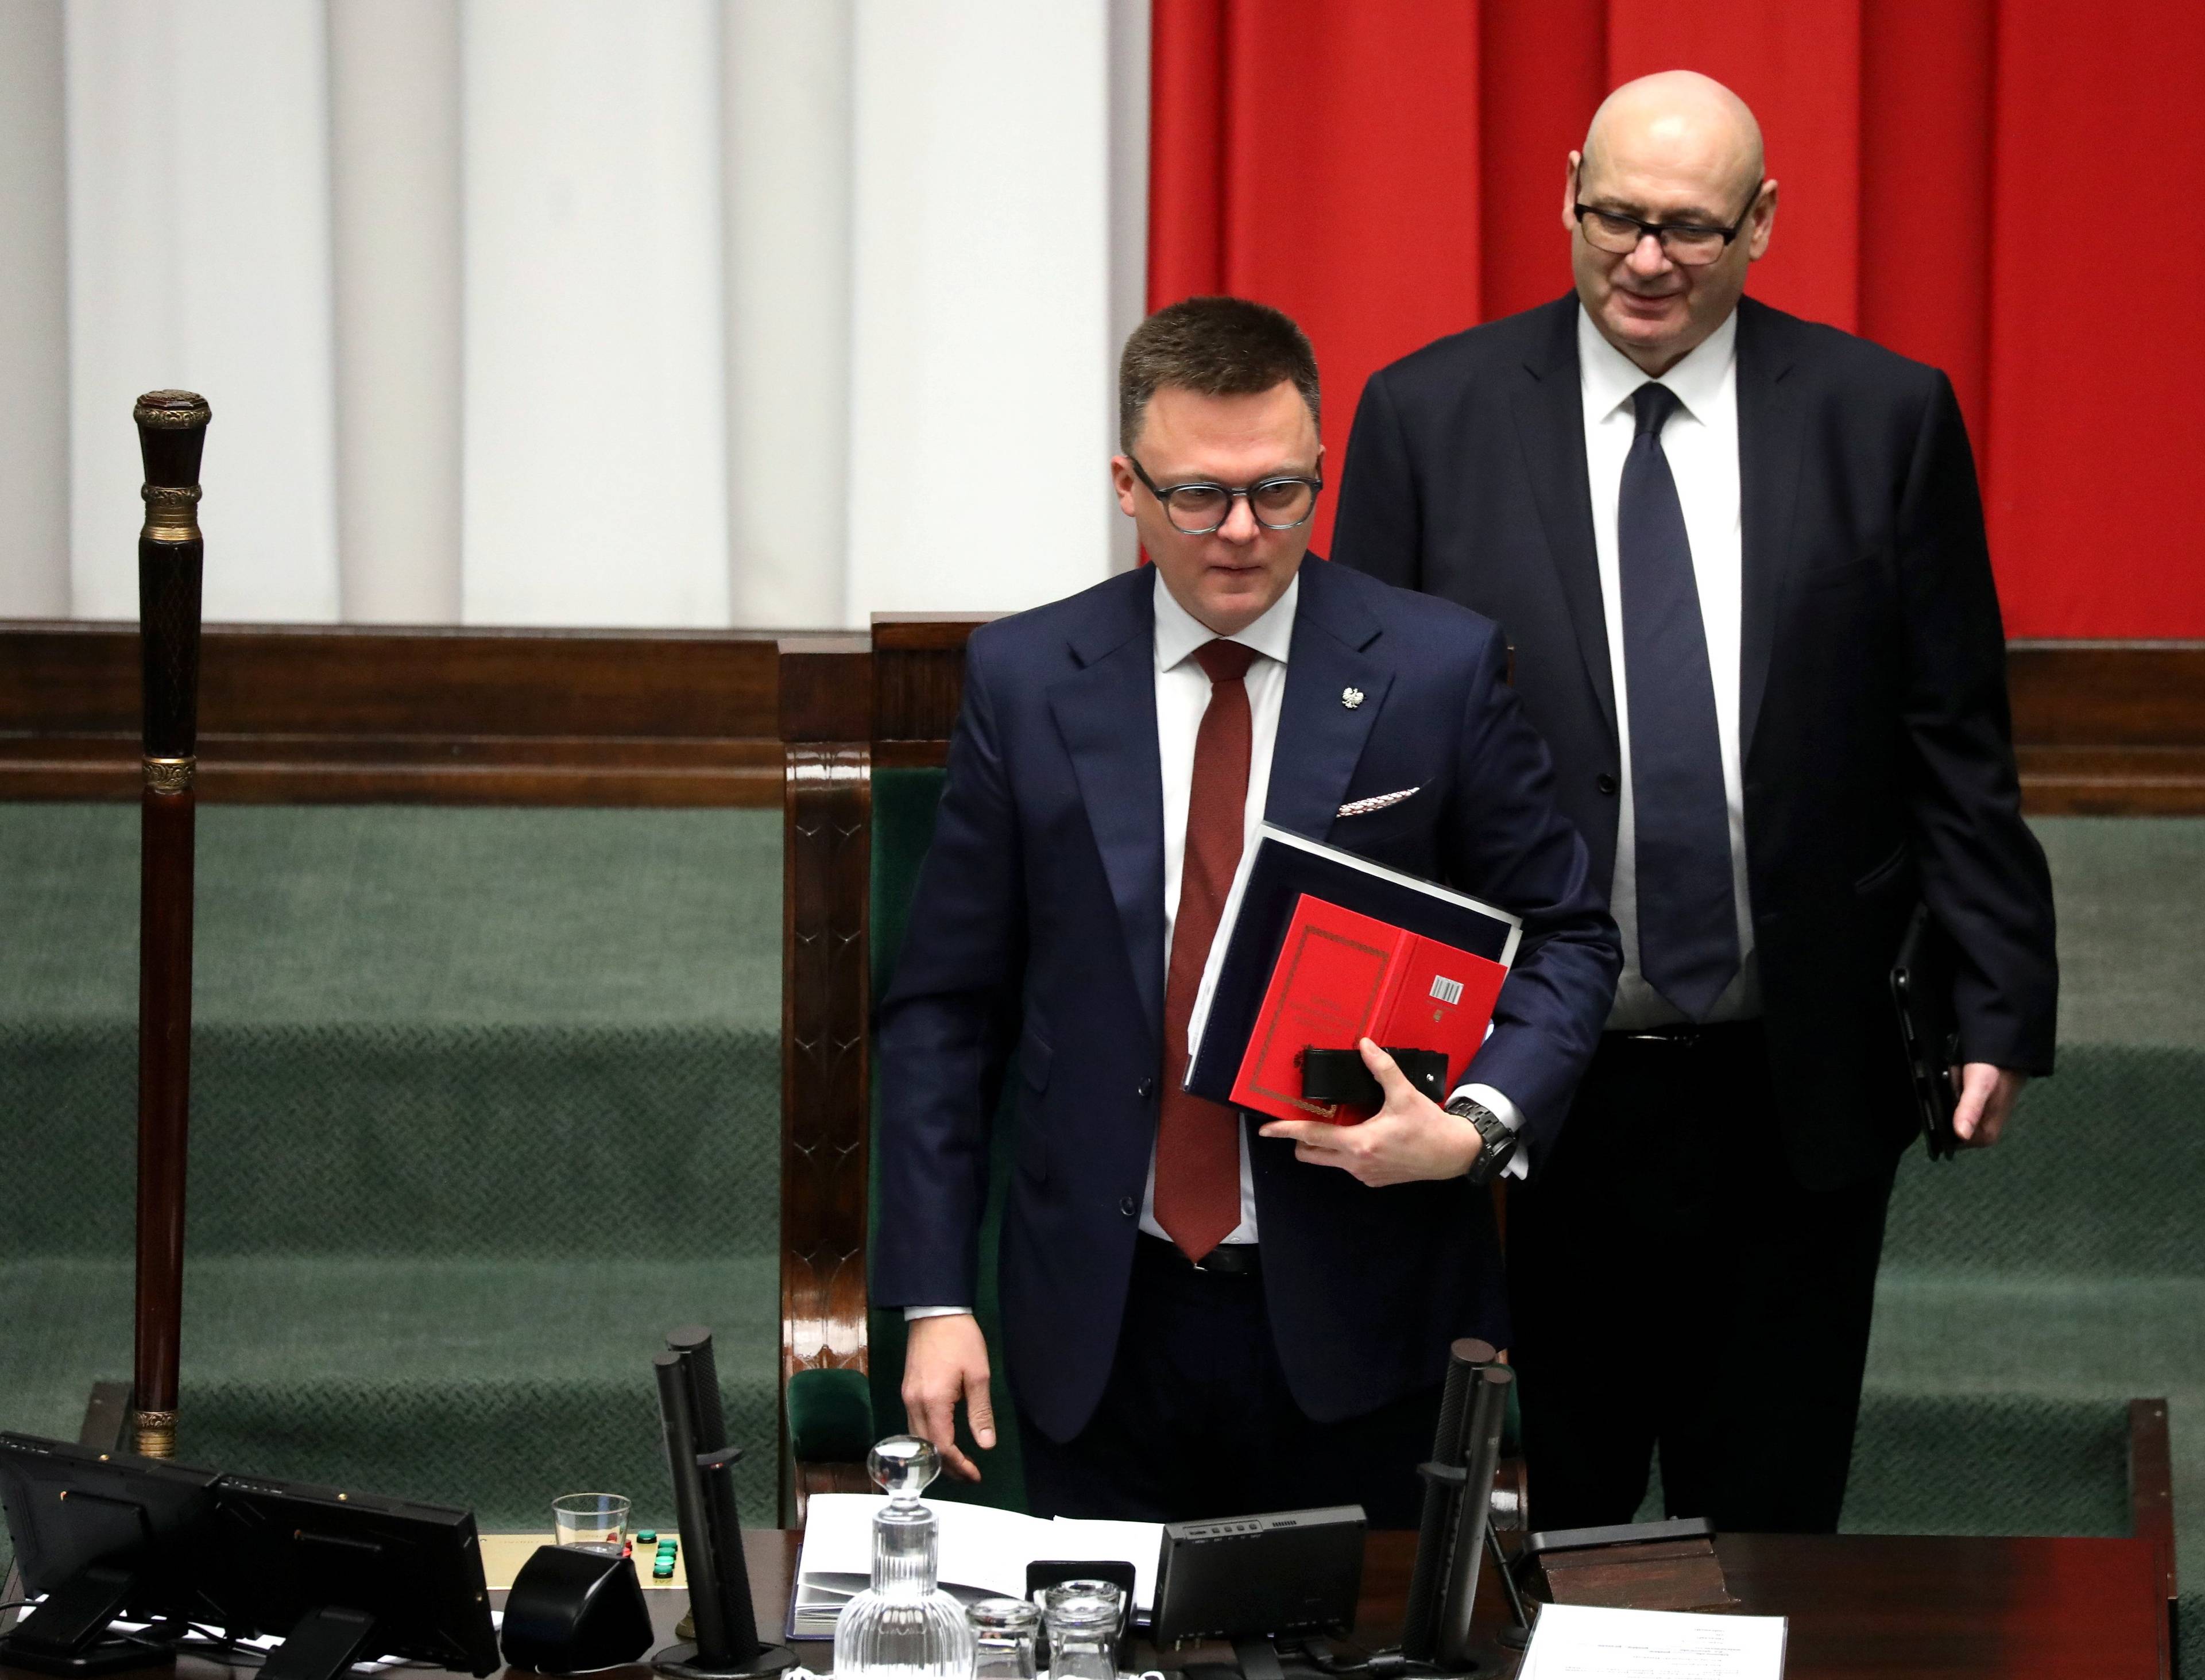 Marszałek Sejmu Szymon Hołownia z czerwoną teczką, z tyłu wicemarszałek Piotr Zgorzelski